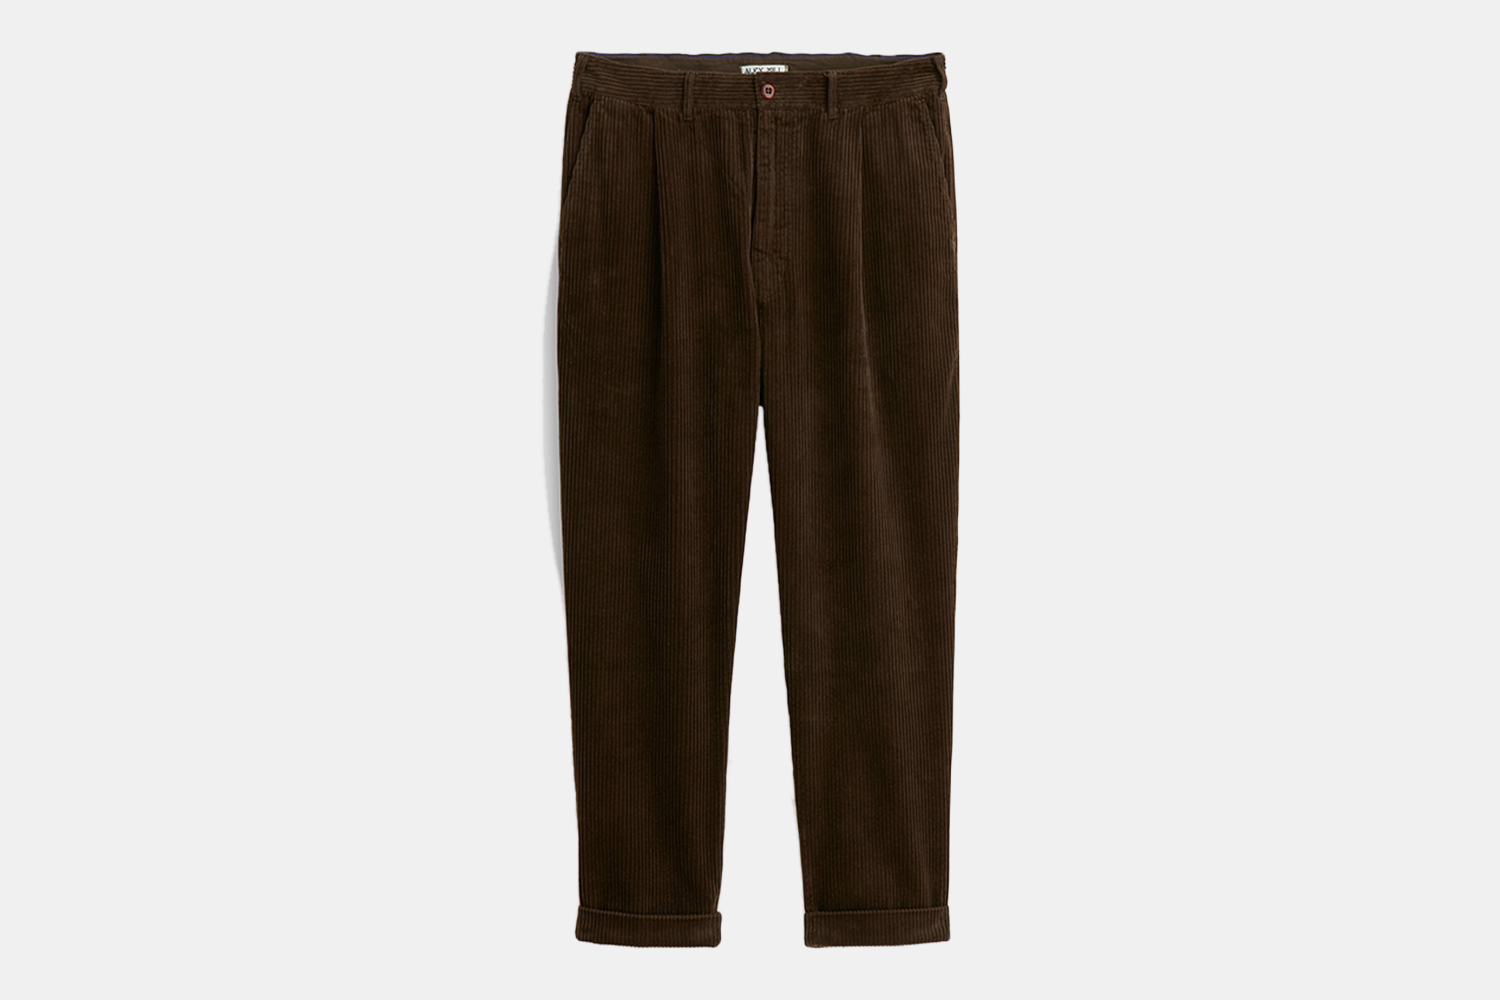 a pair of brown, corduroy pants